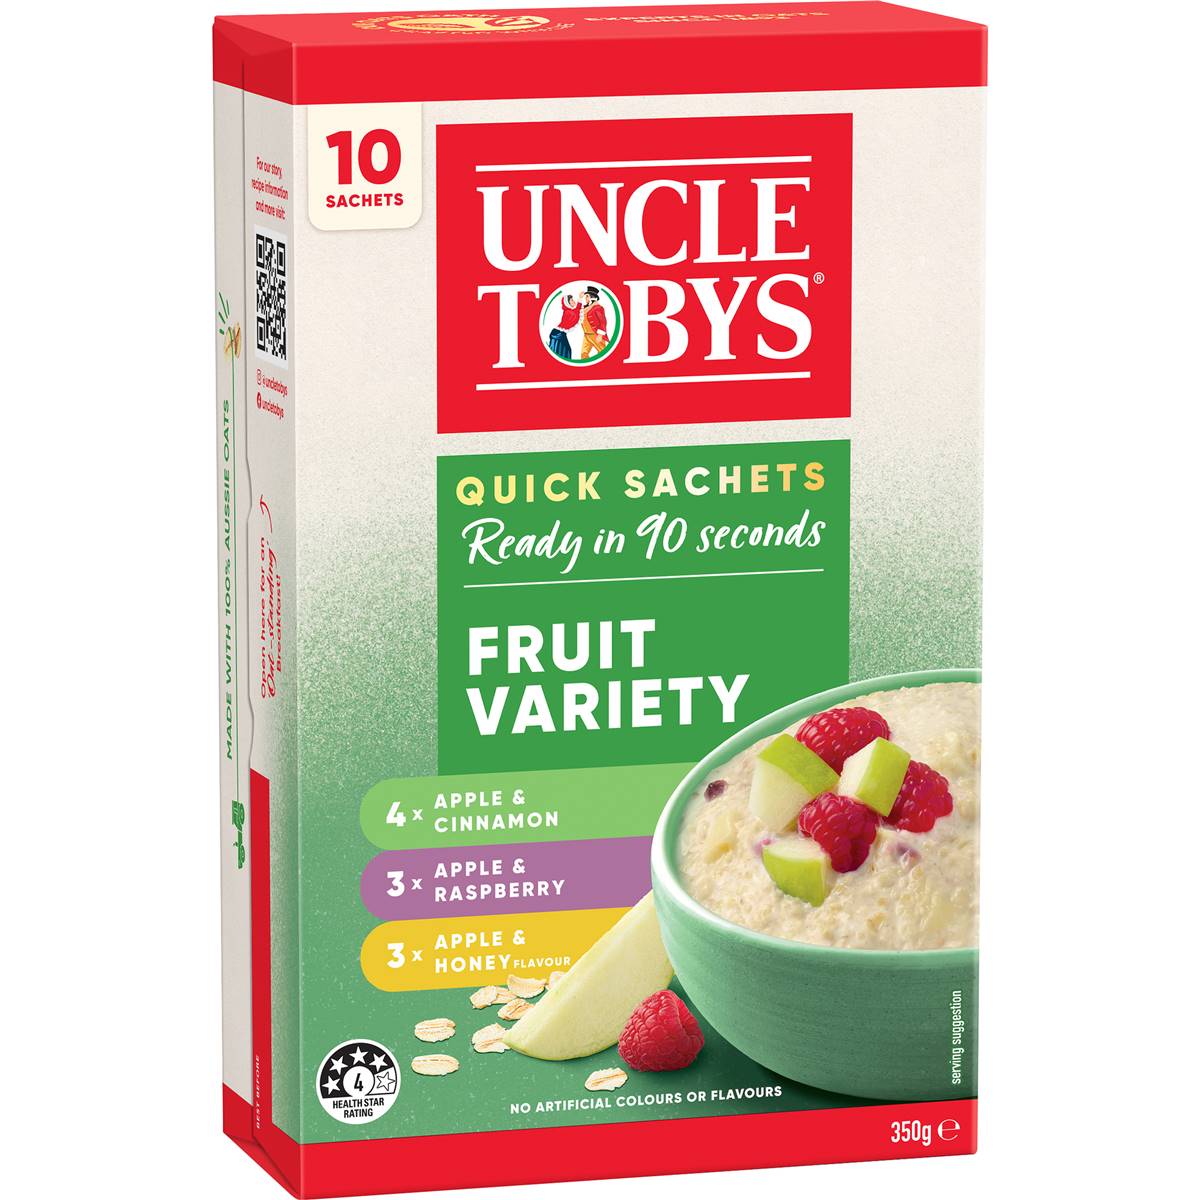 Calories in Uncle Tobys Oats Quick Sachets Fruit Variety Porridge